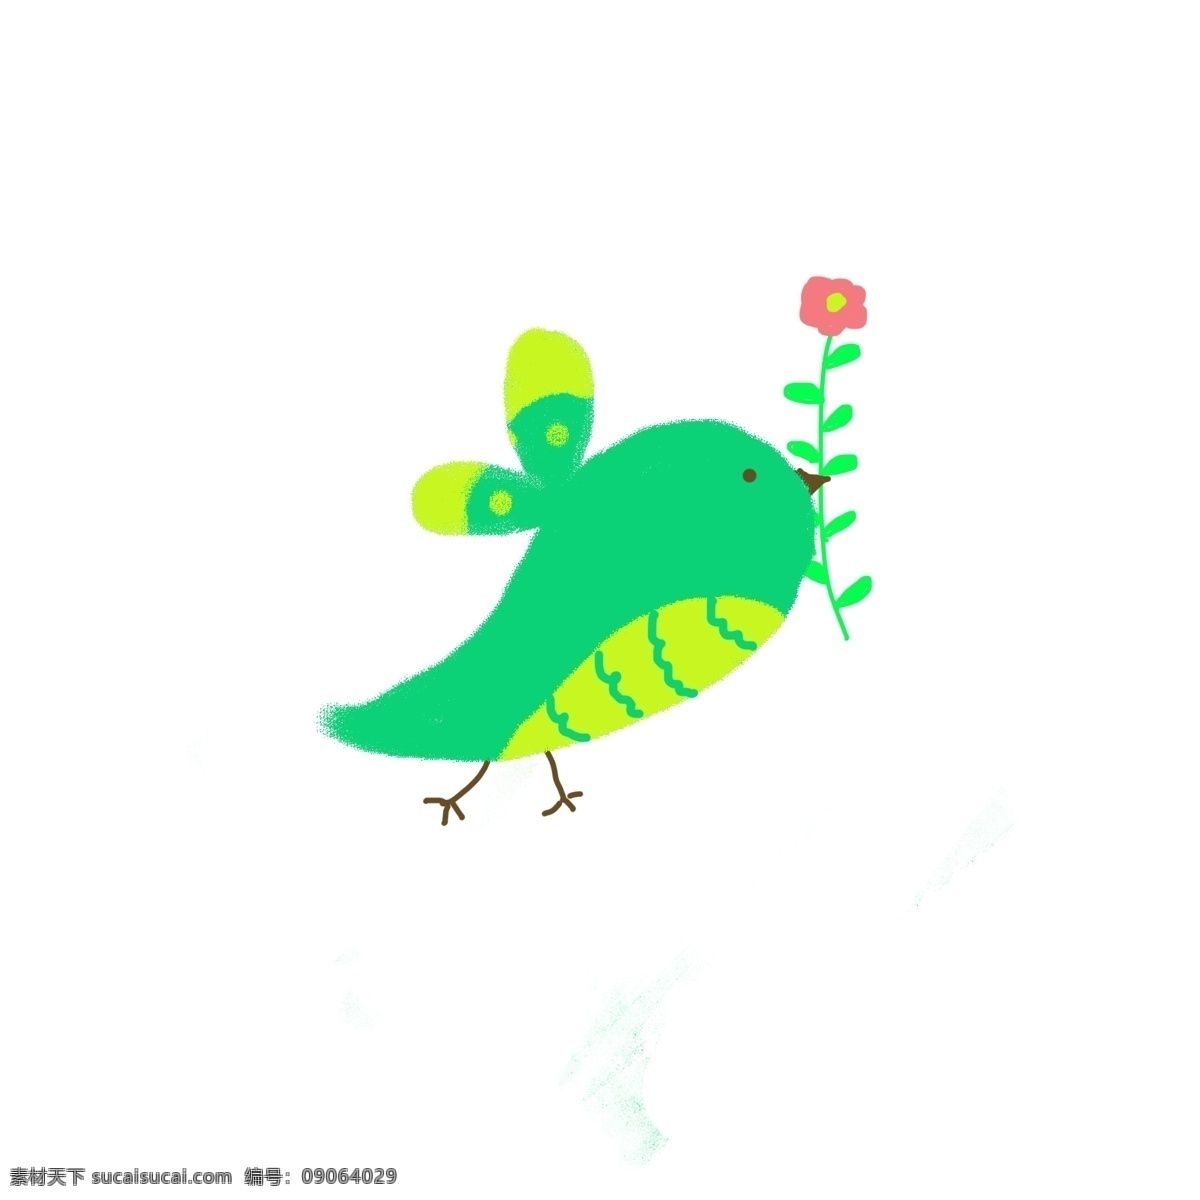 可爱 卡通 小鸟 免 抠 卡通的小鸟 可爱的小鸟 绿色的小鸟 拿花的小鸟 简约的图形 简笔的小鸟 简单的小鸟